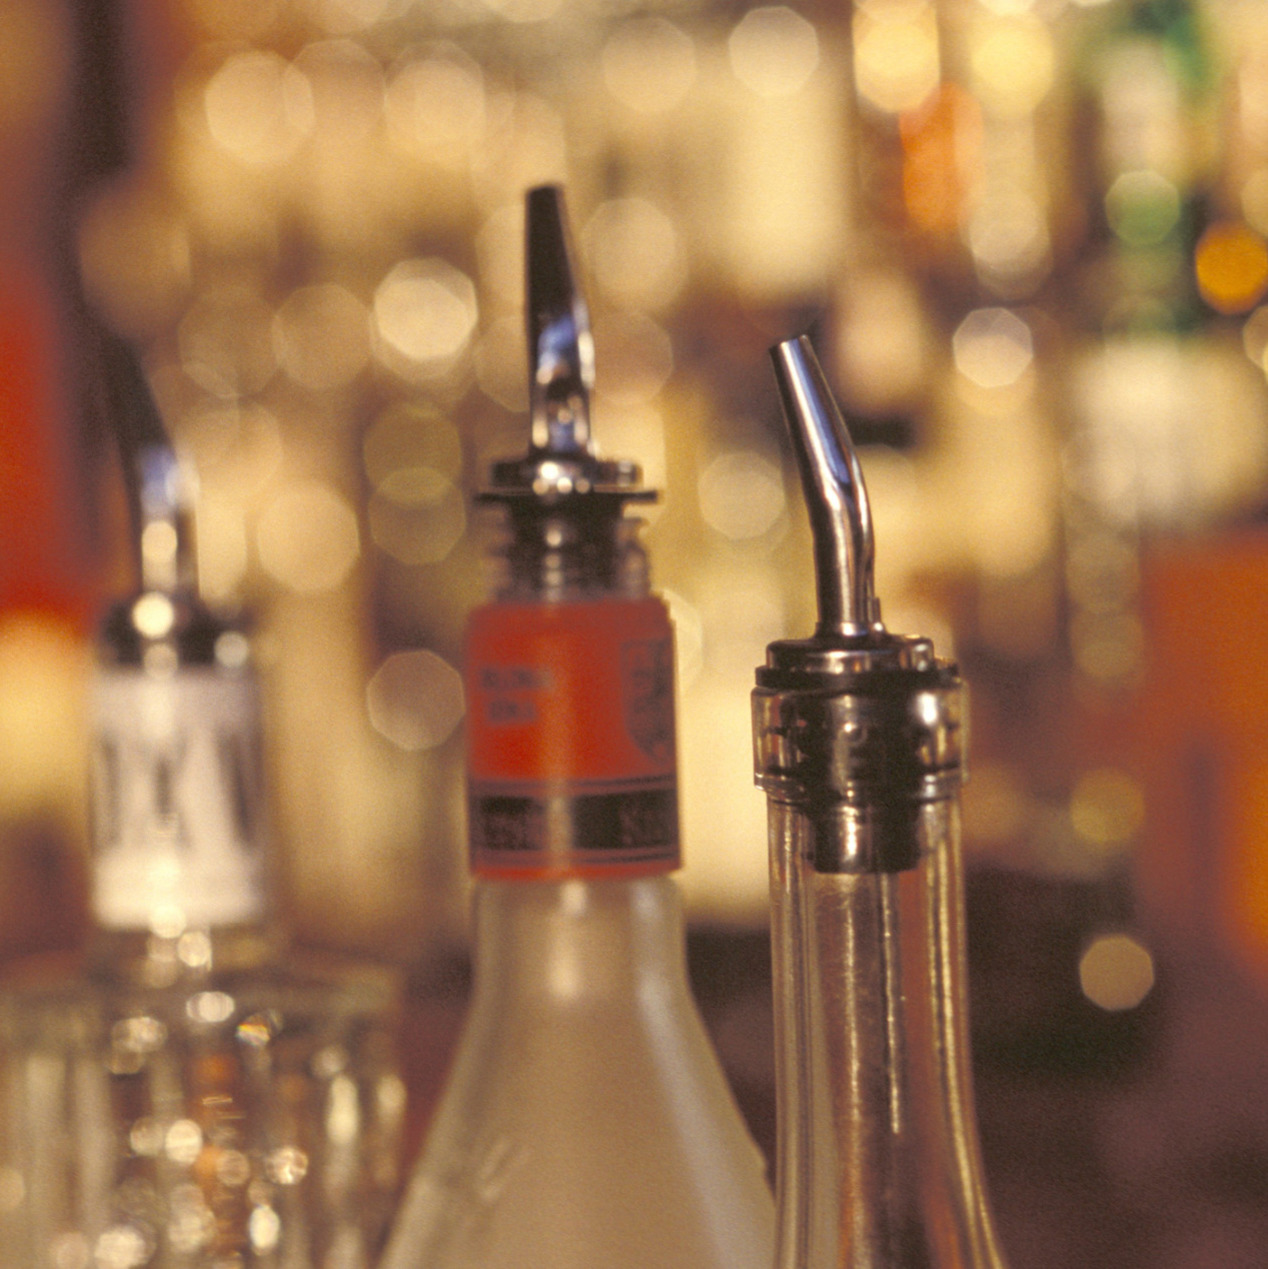 spirits bottle tops in a bar